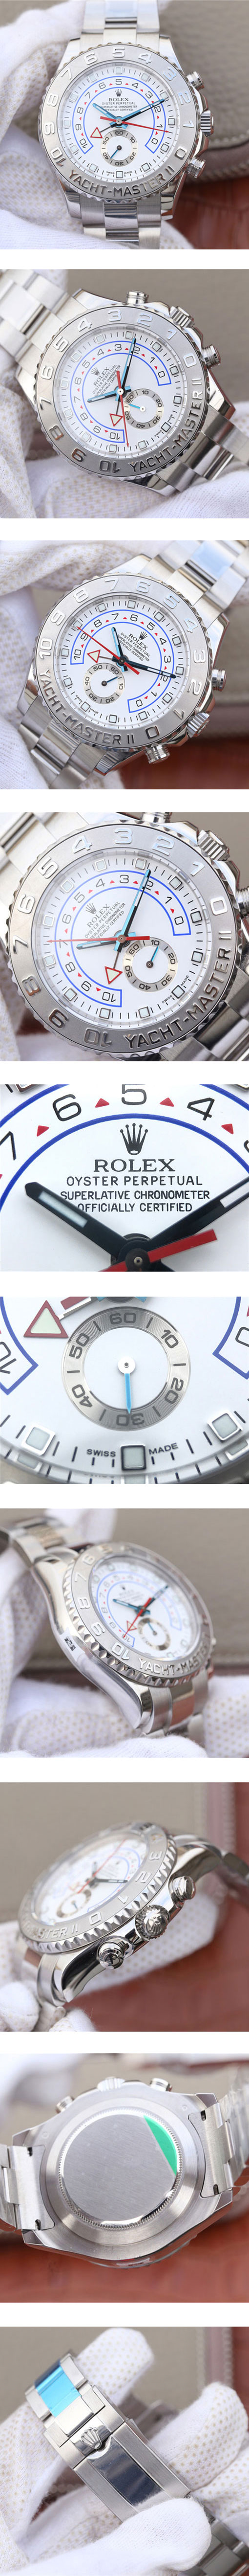 ロレックス ヨットマスター 116689-78219 ホワイトプレート スーパーコピー時計通販